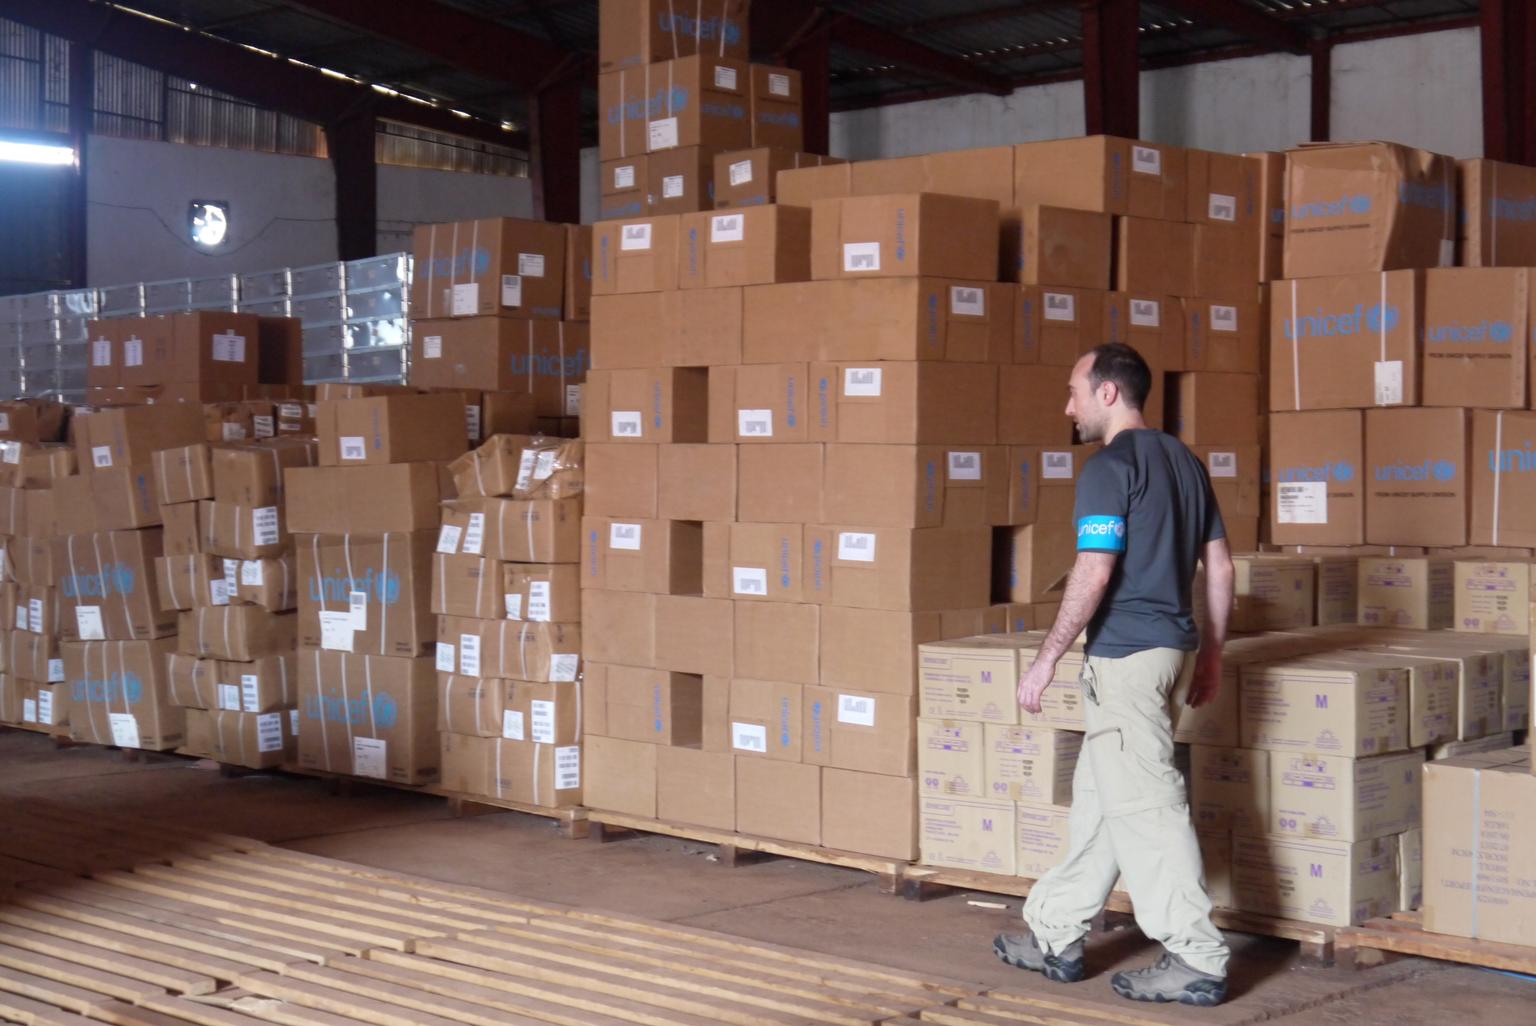 Ein Mitarbeiter von UNICEF steht vor unzähligen Kartons mit Hilfsgütern.